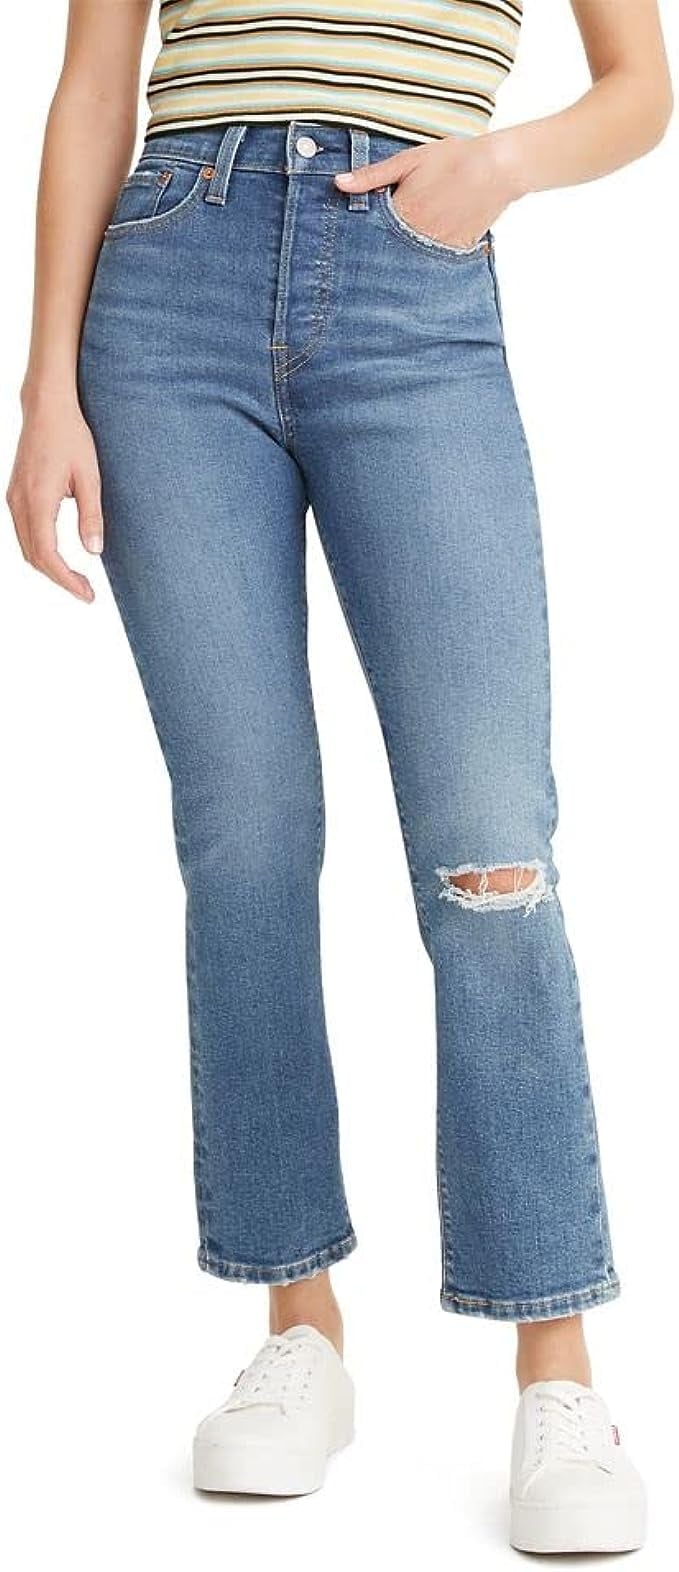 Best Straight Jeans For Short Women